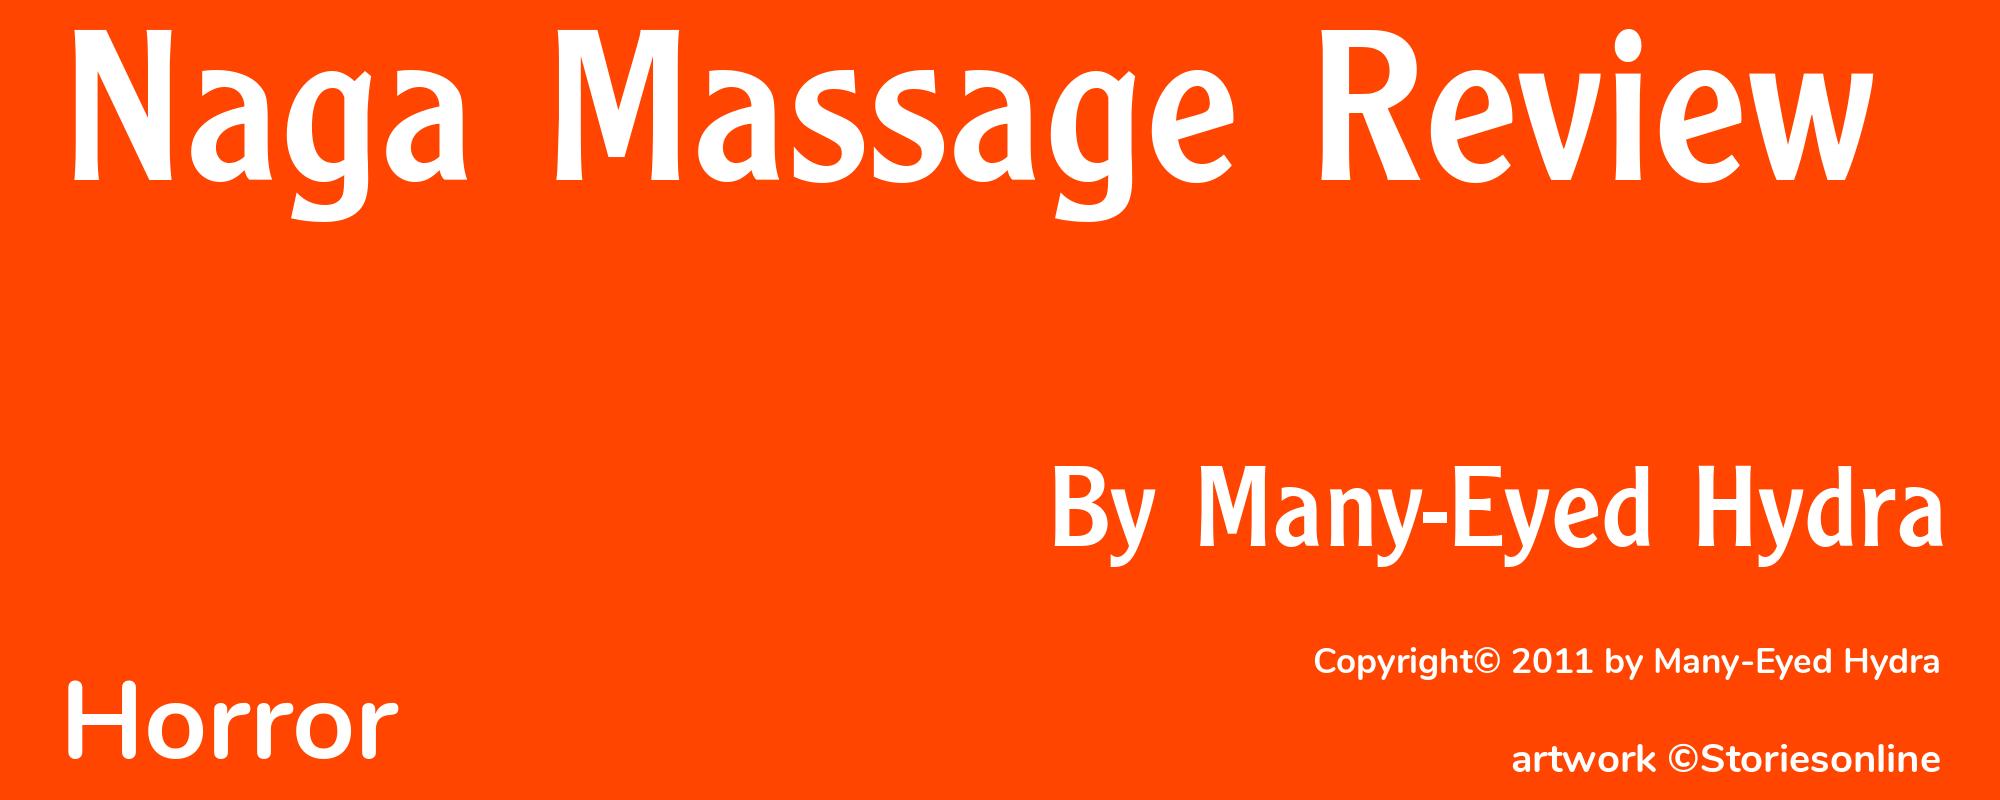 Naga Massage Review - Cover